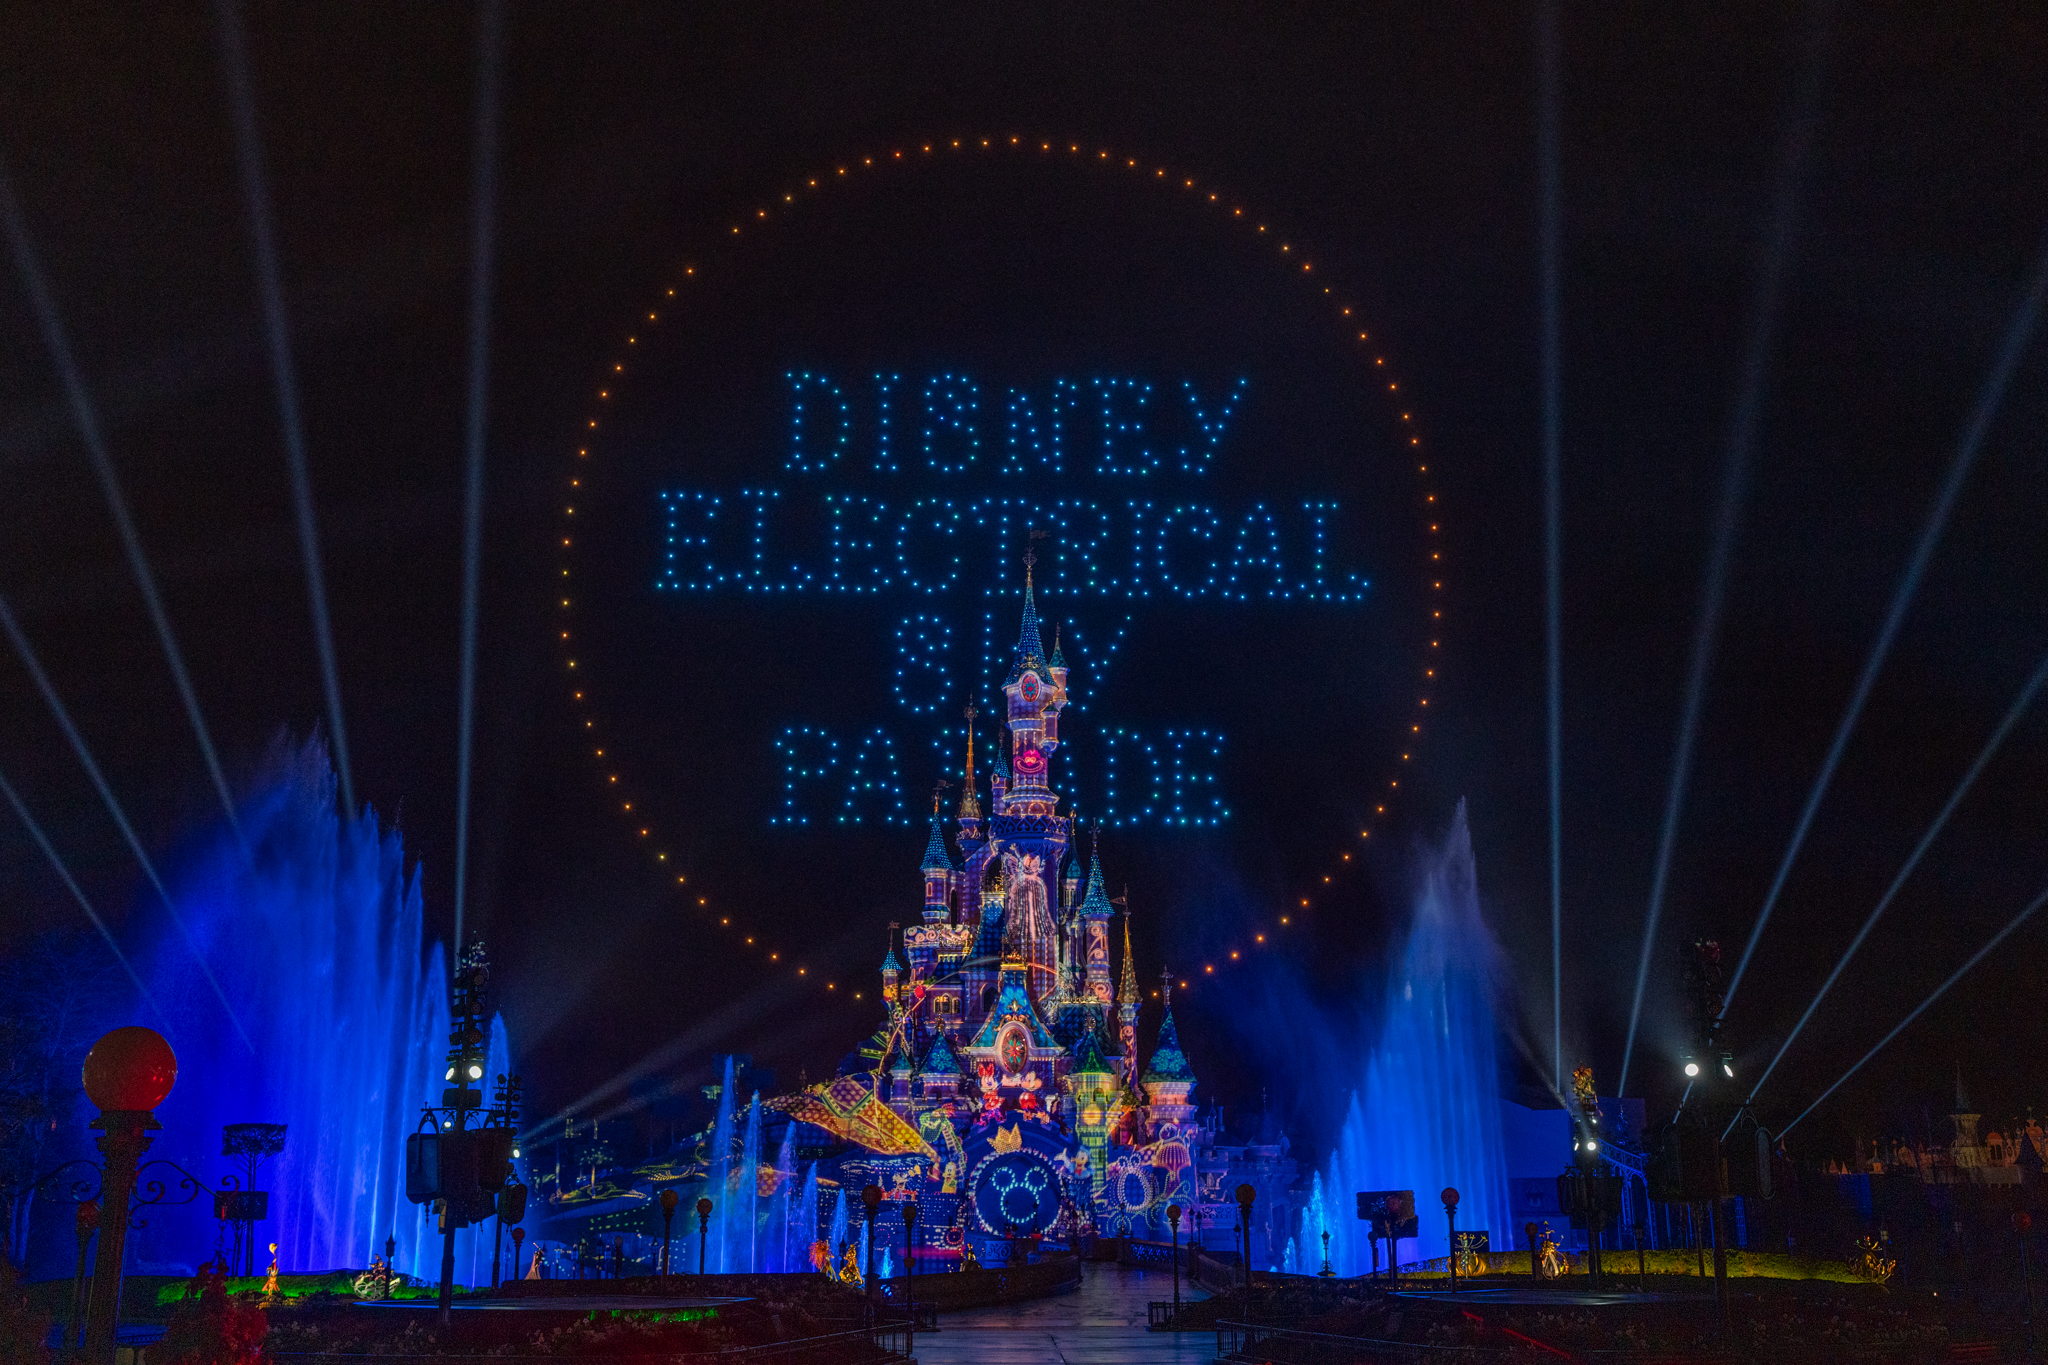 Disneyland Paris dévoile un nouveau spectacle éblouissant, avec une parade électrique de 500 drones : découvrez-le en images